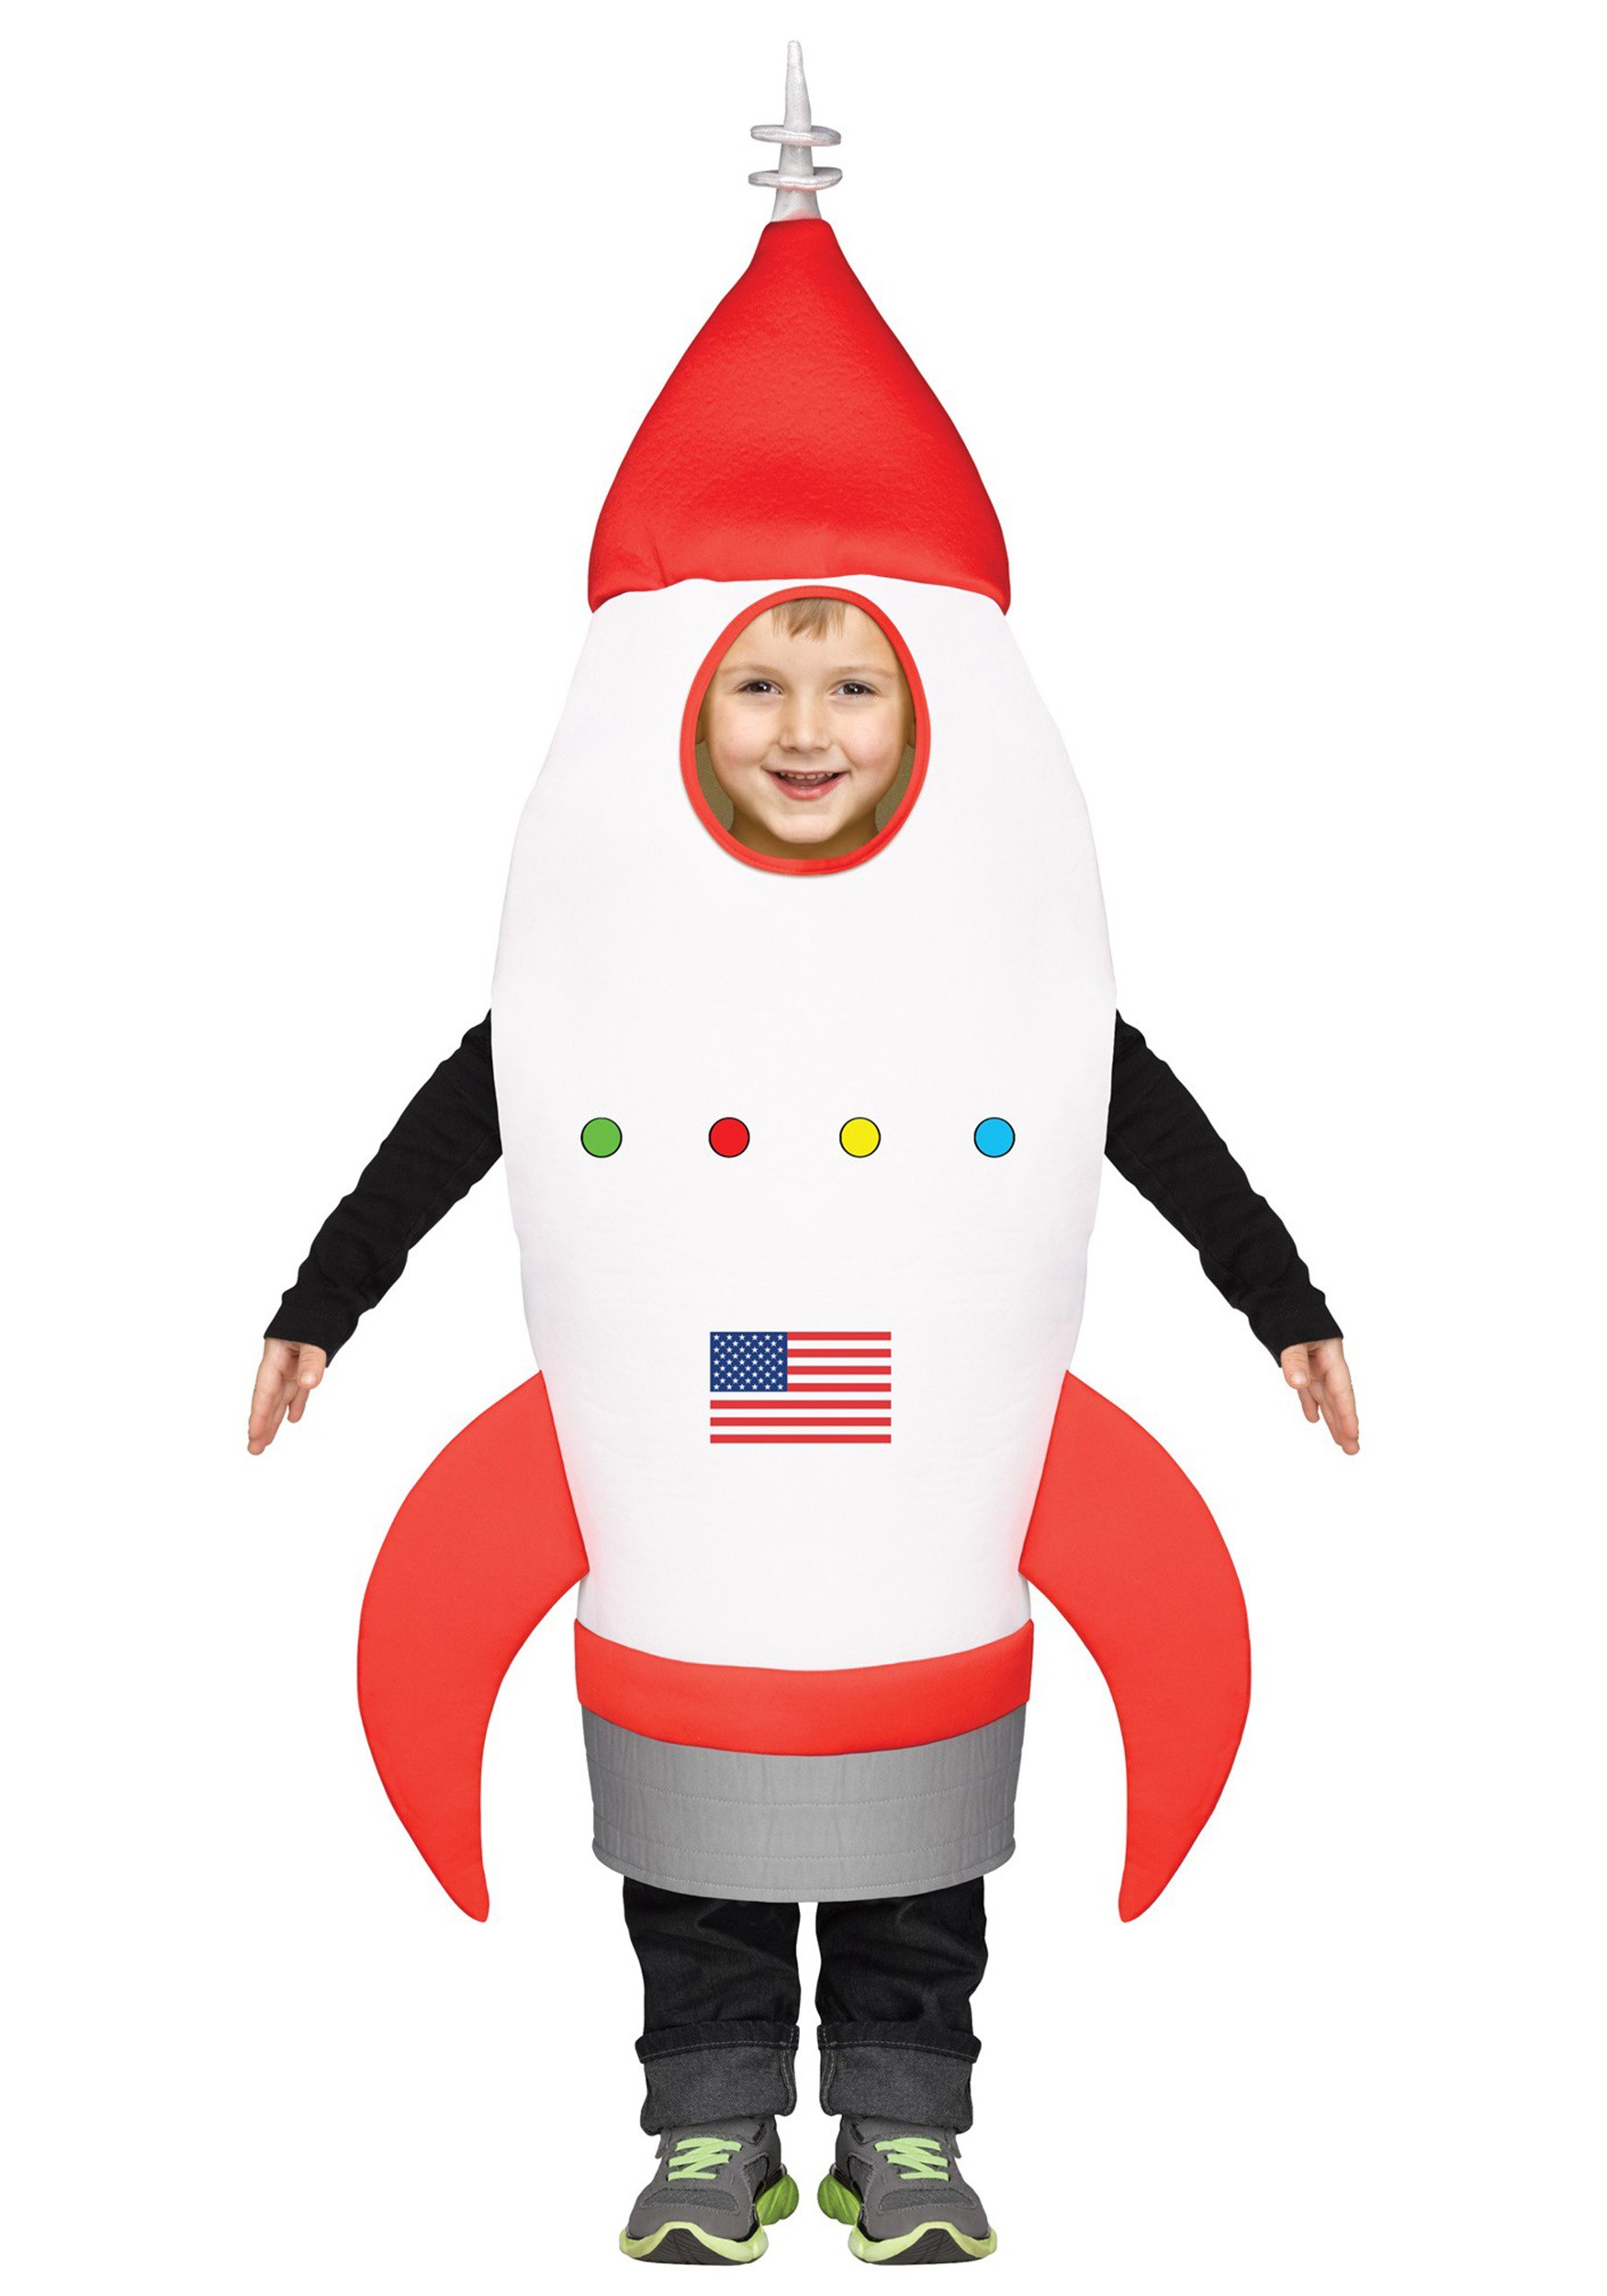 rocketship costume